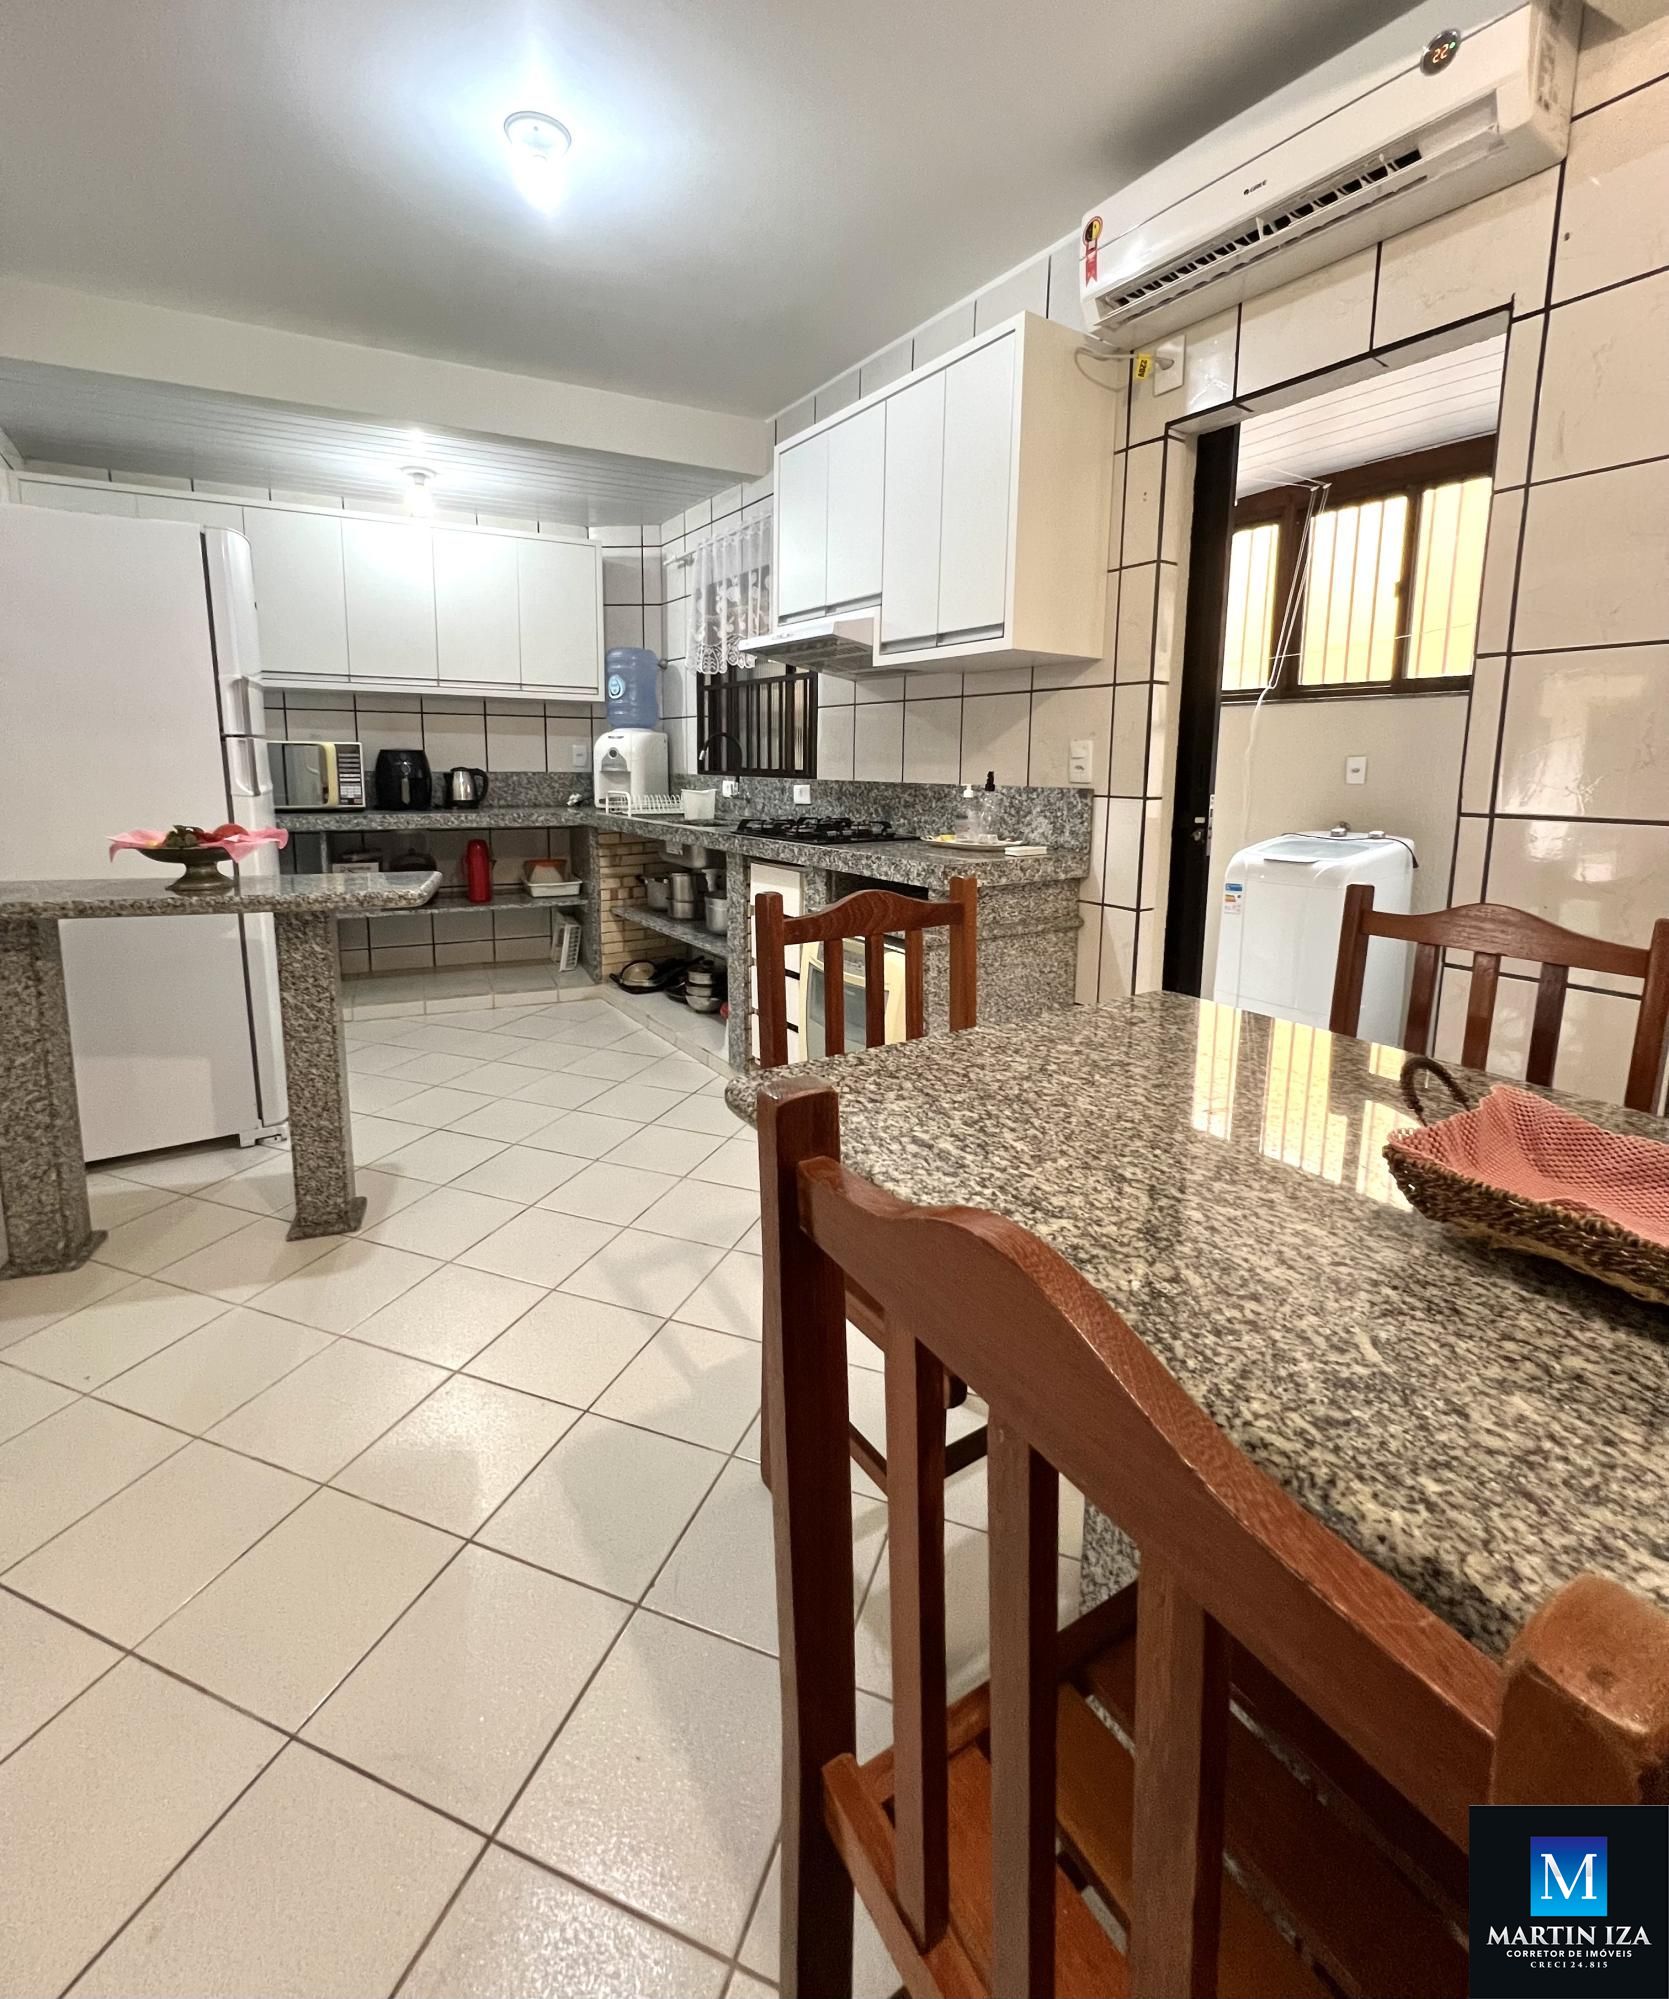 Apartamento com 3 Dormitórios para alugar, 110 m² por R$ 850,00